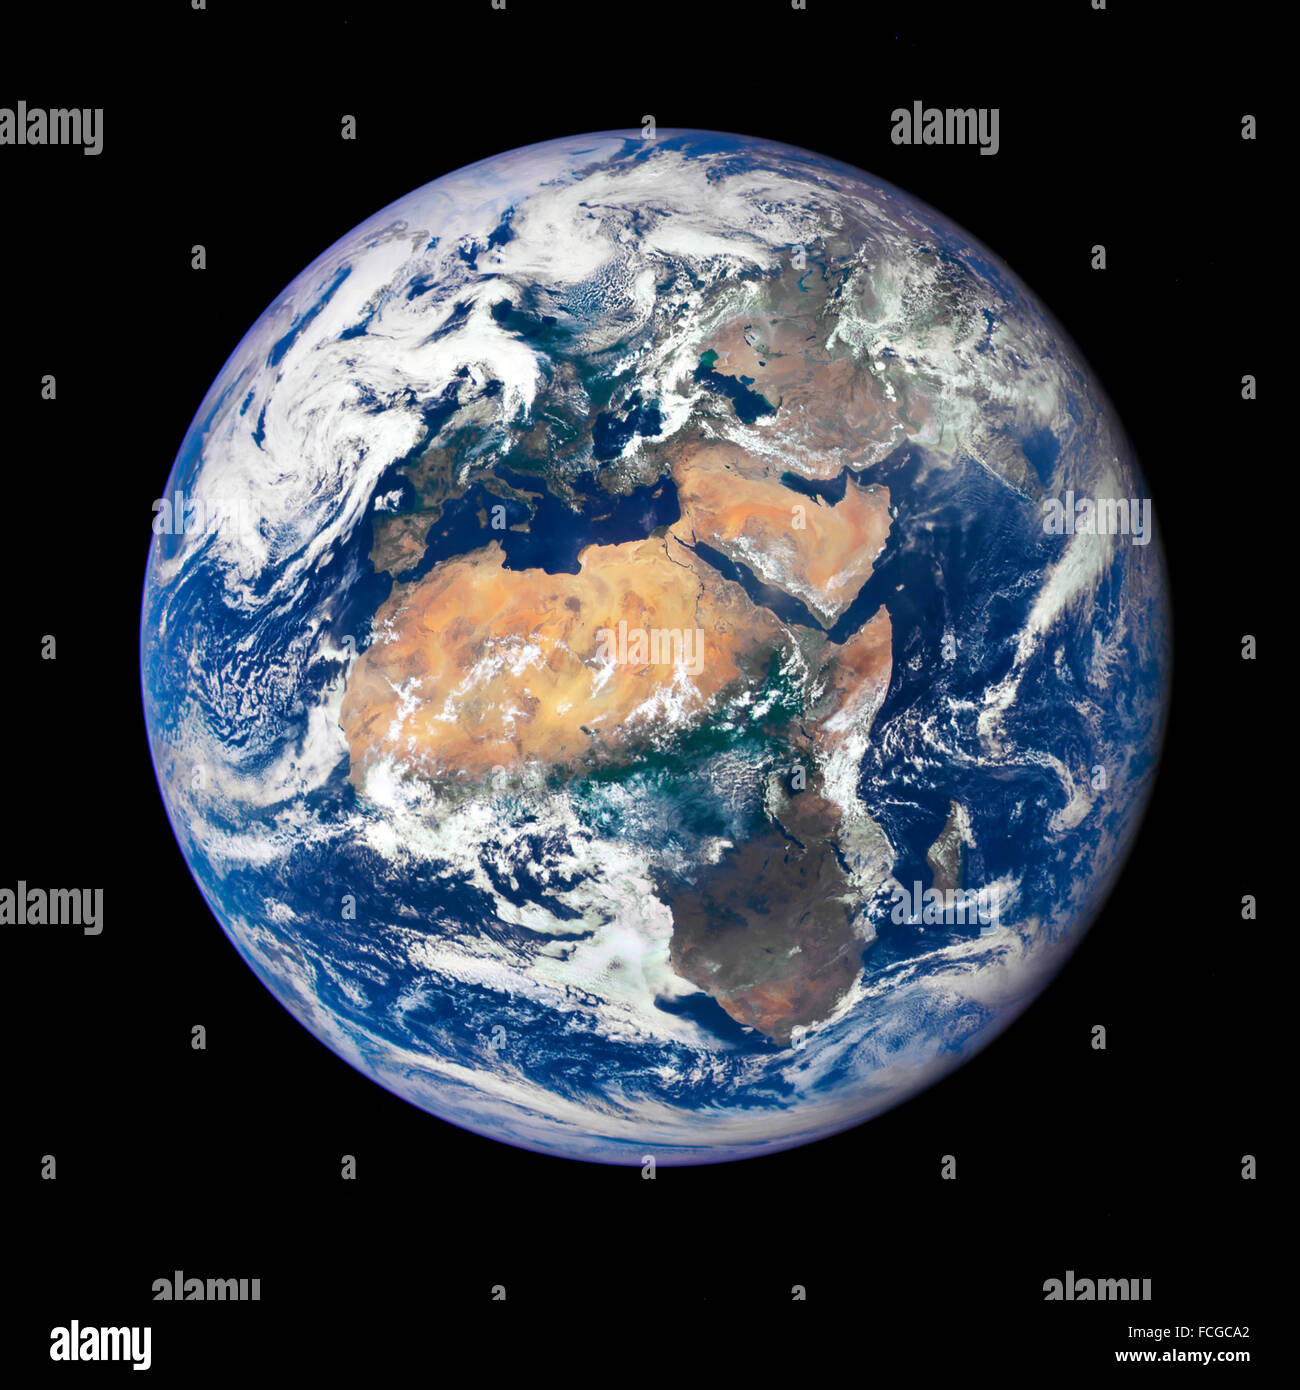 Bild der Erde am 29. Juli 2015 mit einer NASA-Kamera auf dem Deep Space Climate Observatory (DSCOVR) Satelliten aufgenommen. Das Bild ist von einem Aussichtspunkt 1 Million Meilen von der Erde und ist eines der ersten genommen von der NASA Earth polychromatische Imaging Kamera (EPIC) Stockfoto